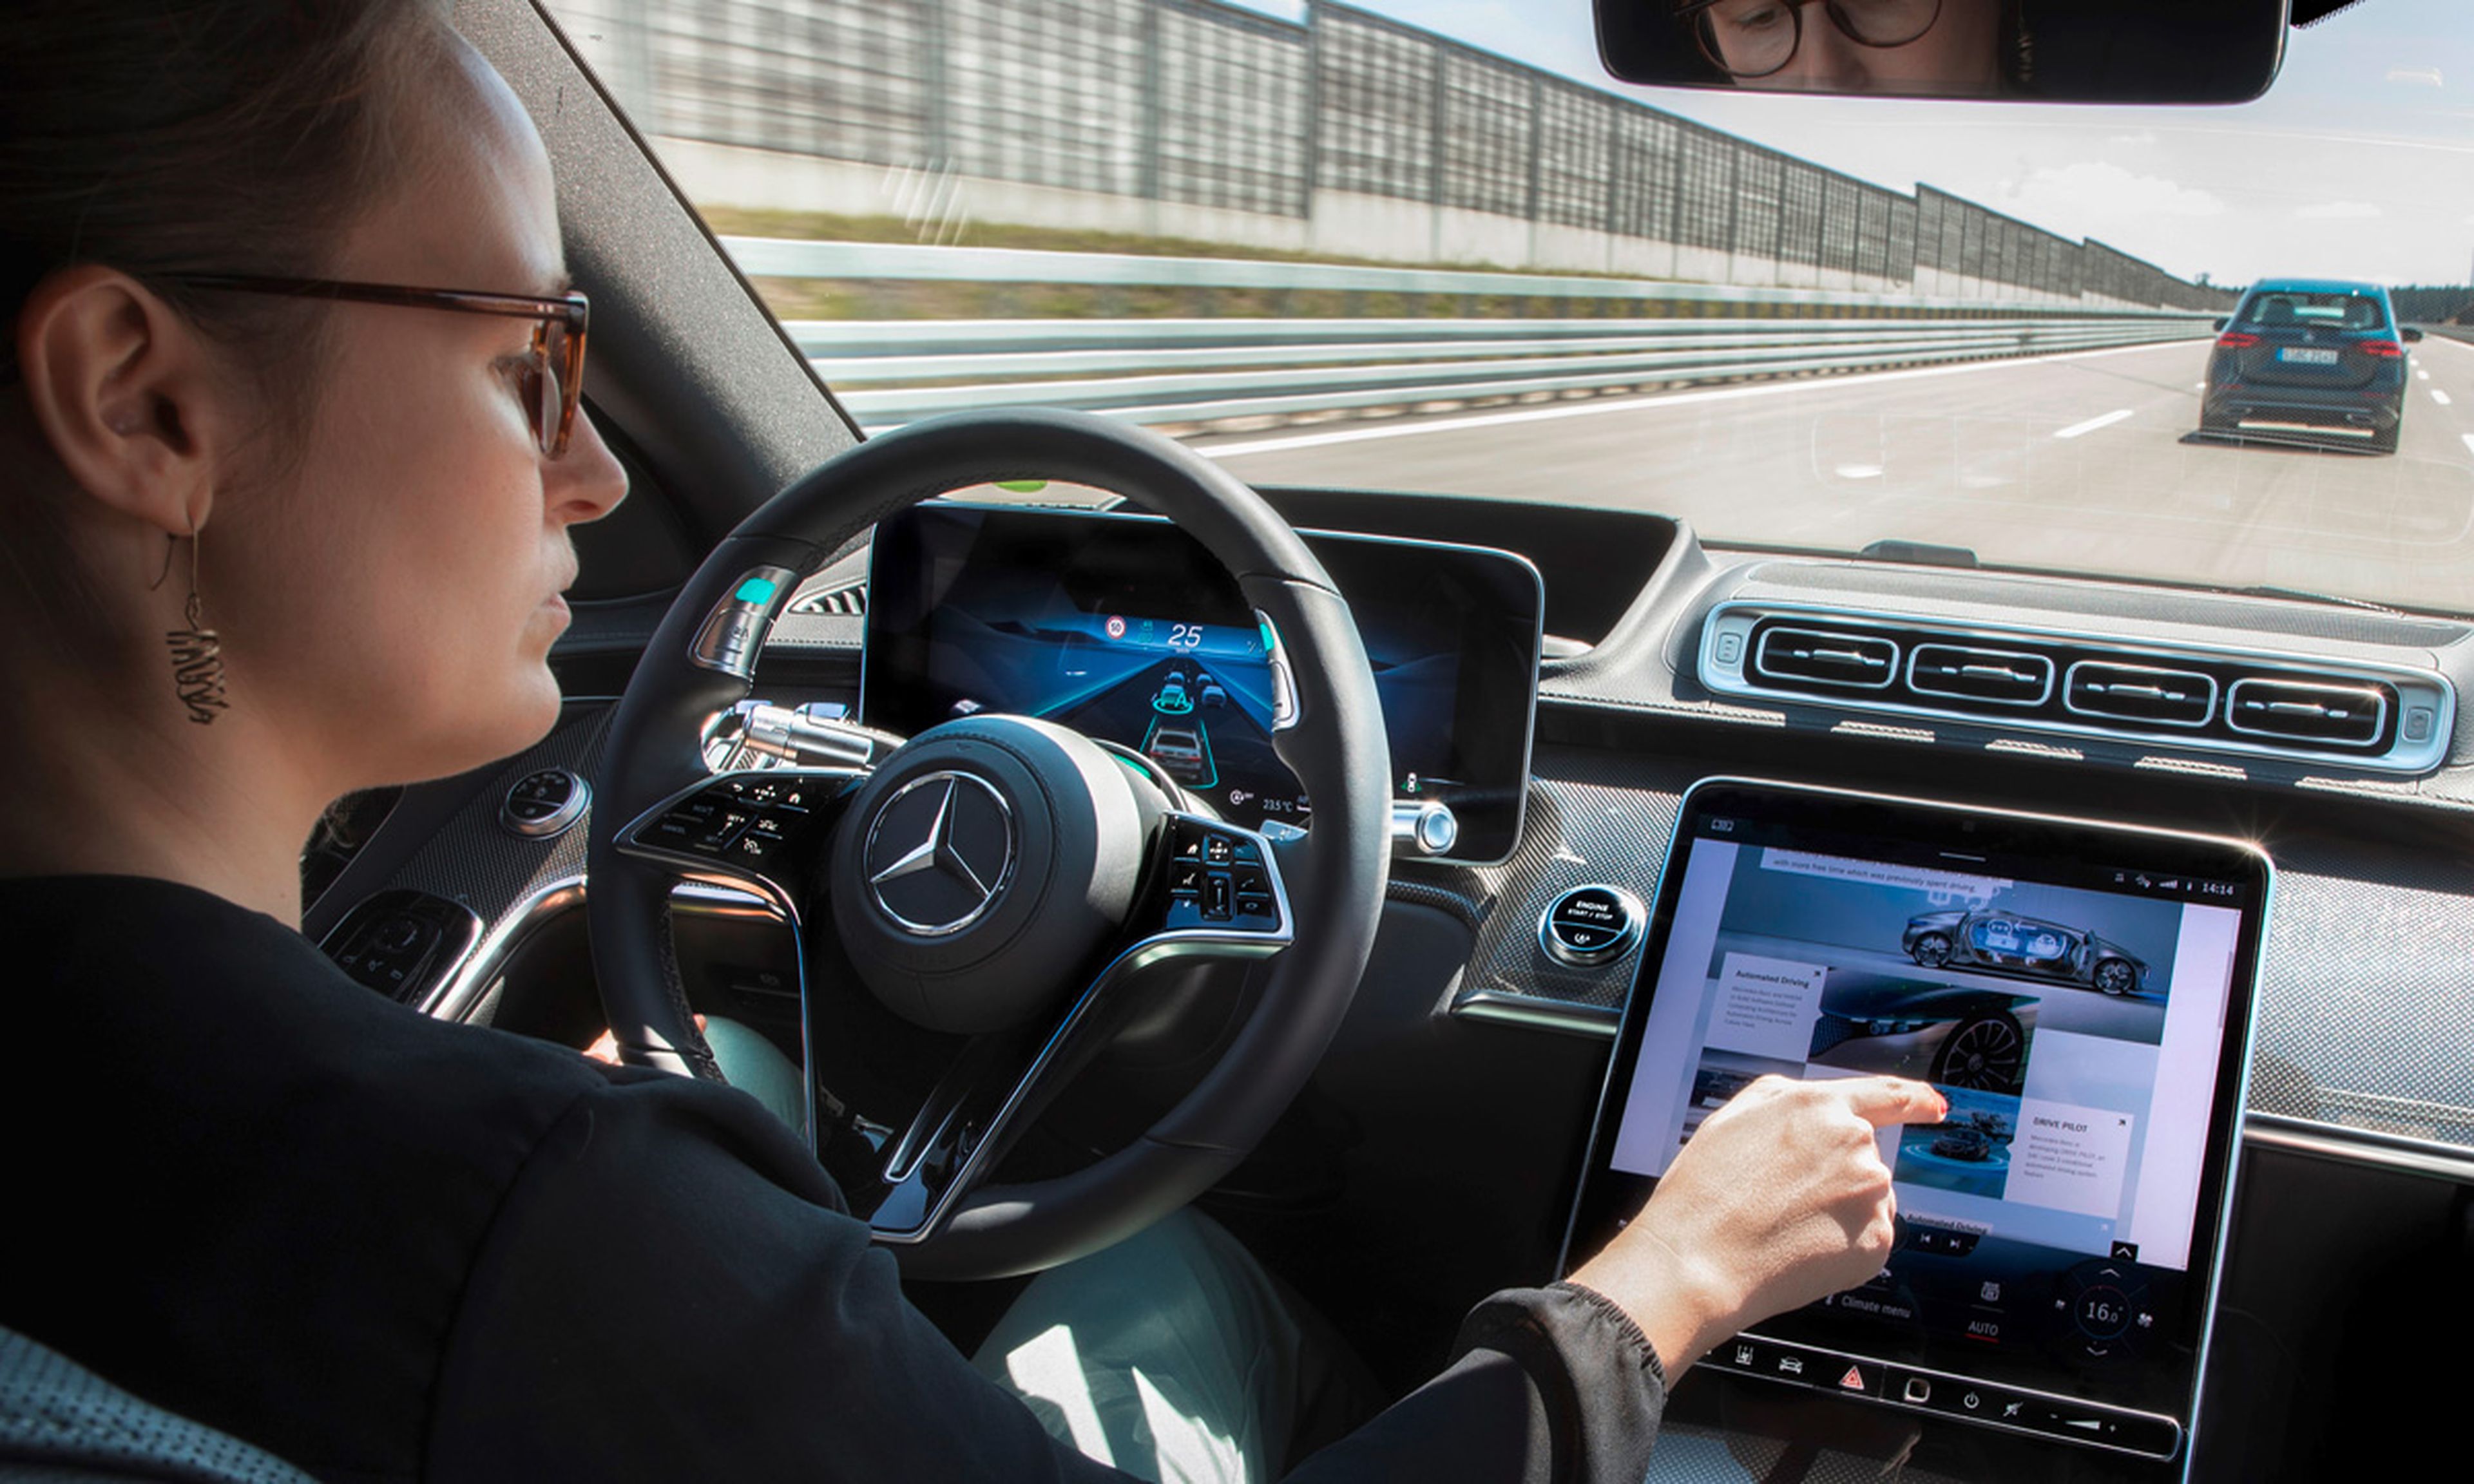 Mercedes Clase S: ¿Primer coche autónomo nivel 3 en Europa?